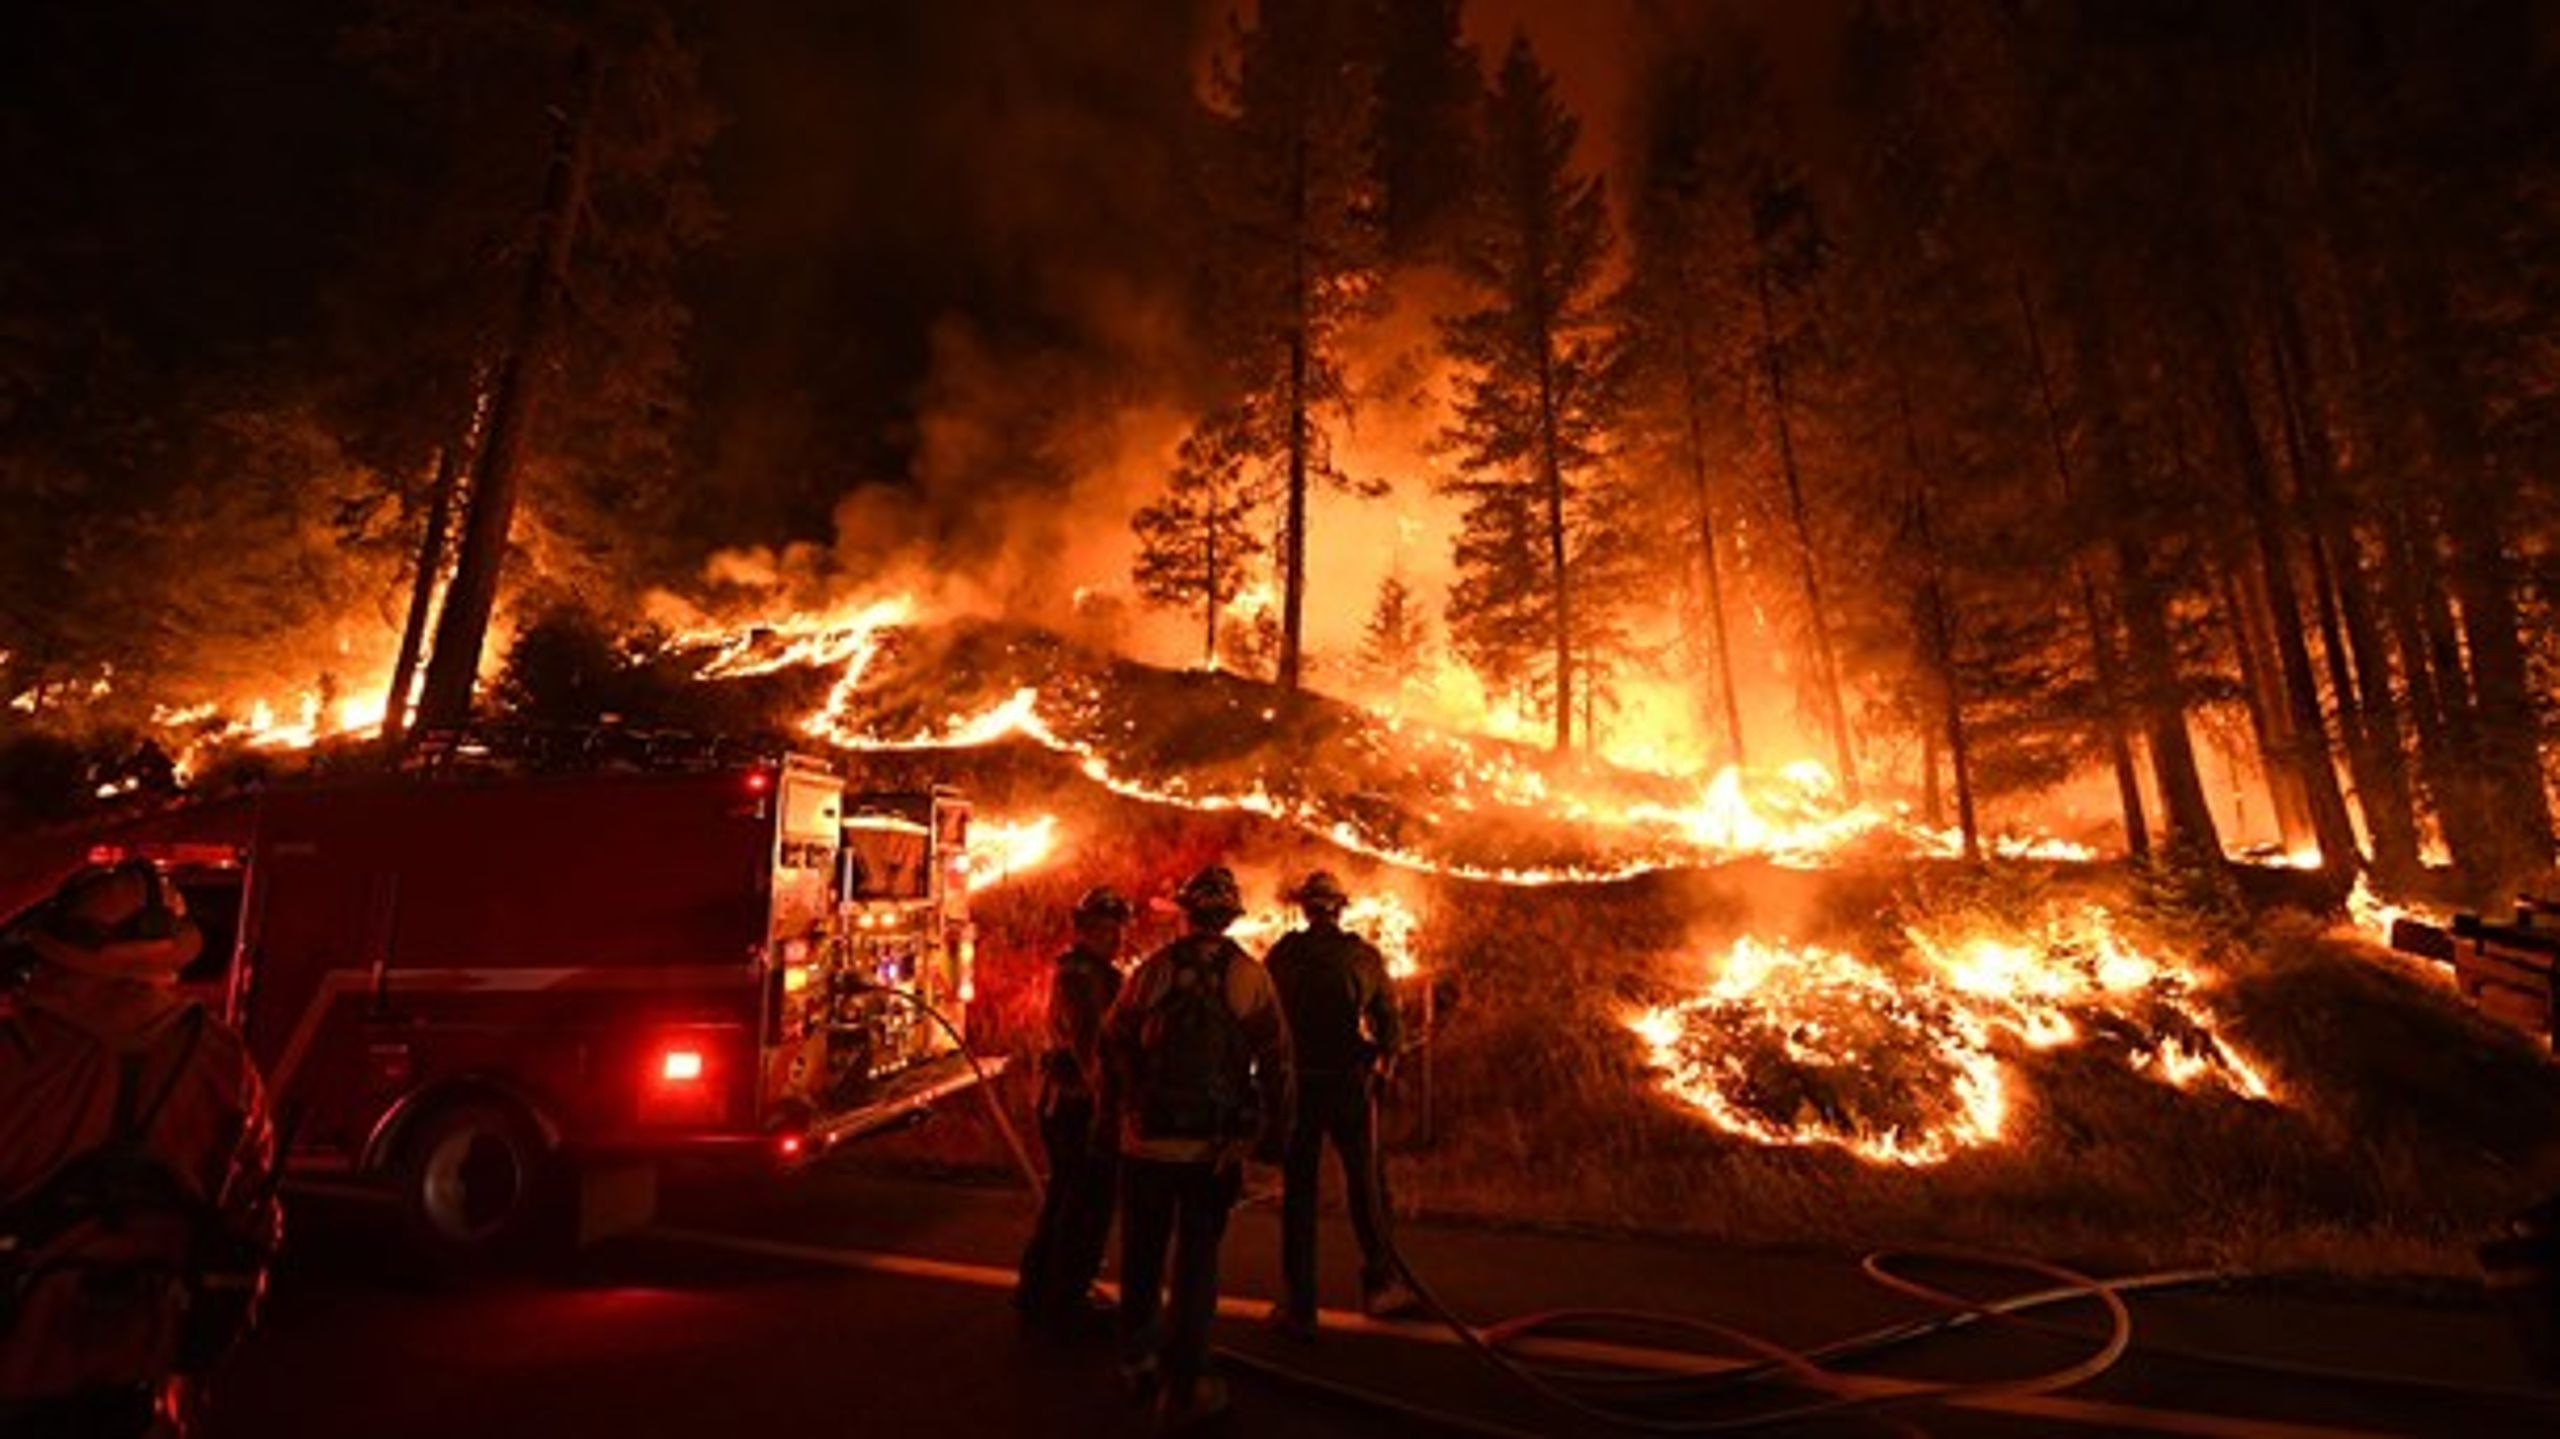 KLIMAKRIG: Konsekvenserne af klimaændringerne viser sig nu også i vores del af verden, skriver Steen Gade (billedet er fra en skovbrand i Californien, USA 31. juli)